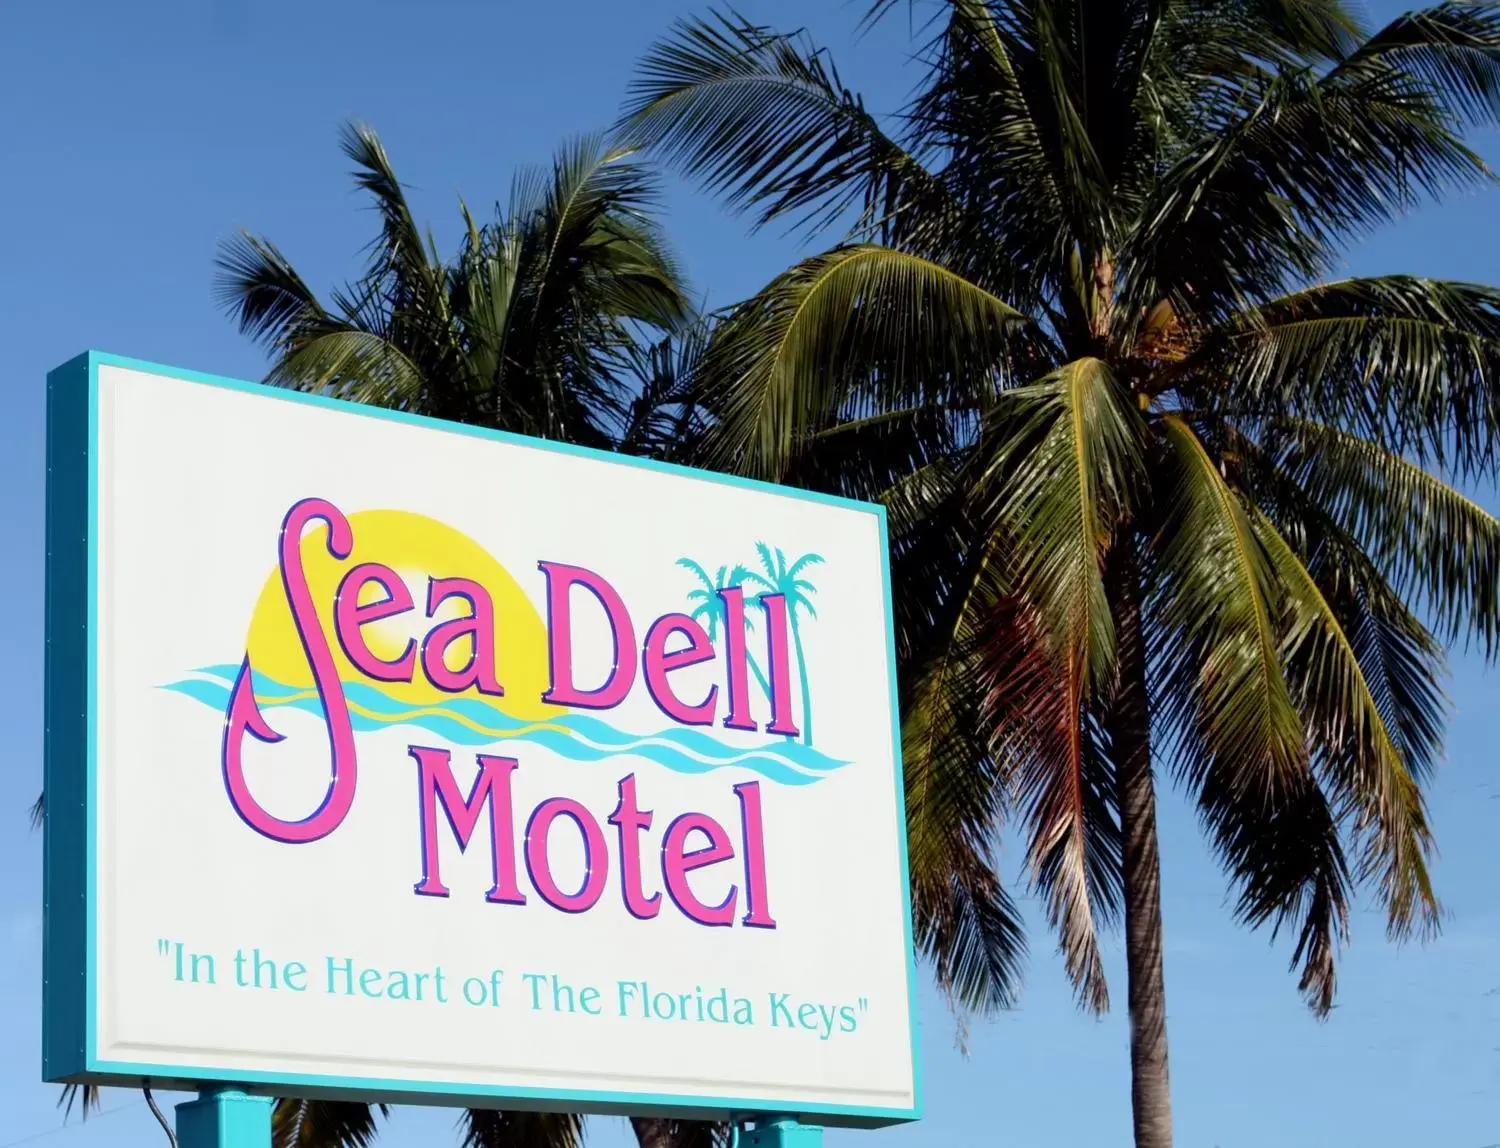 Sea Dell Motel - Marathon